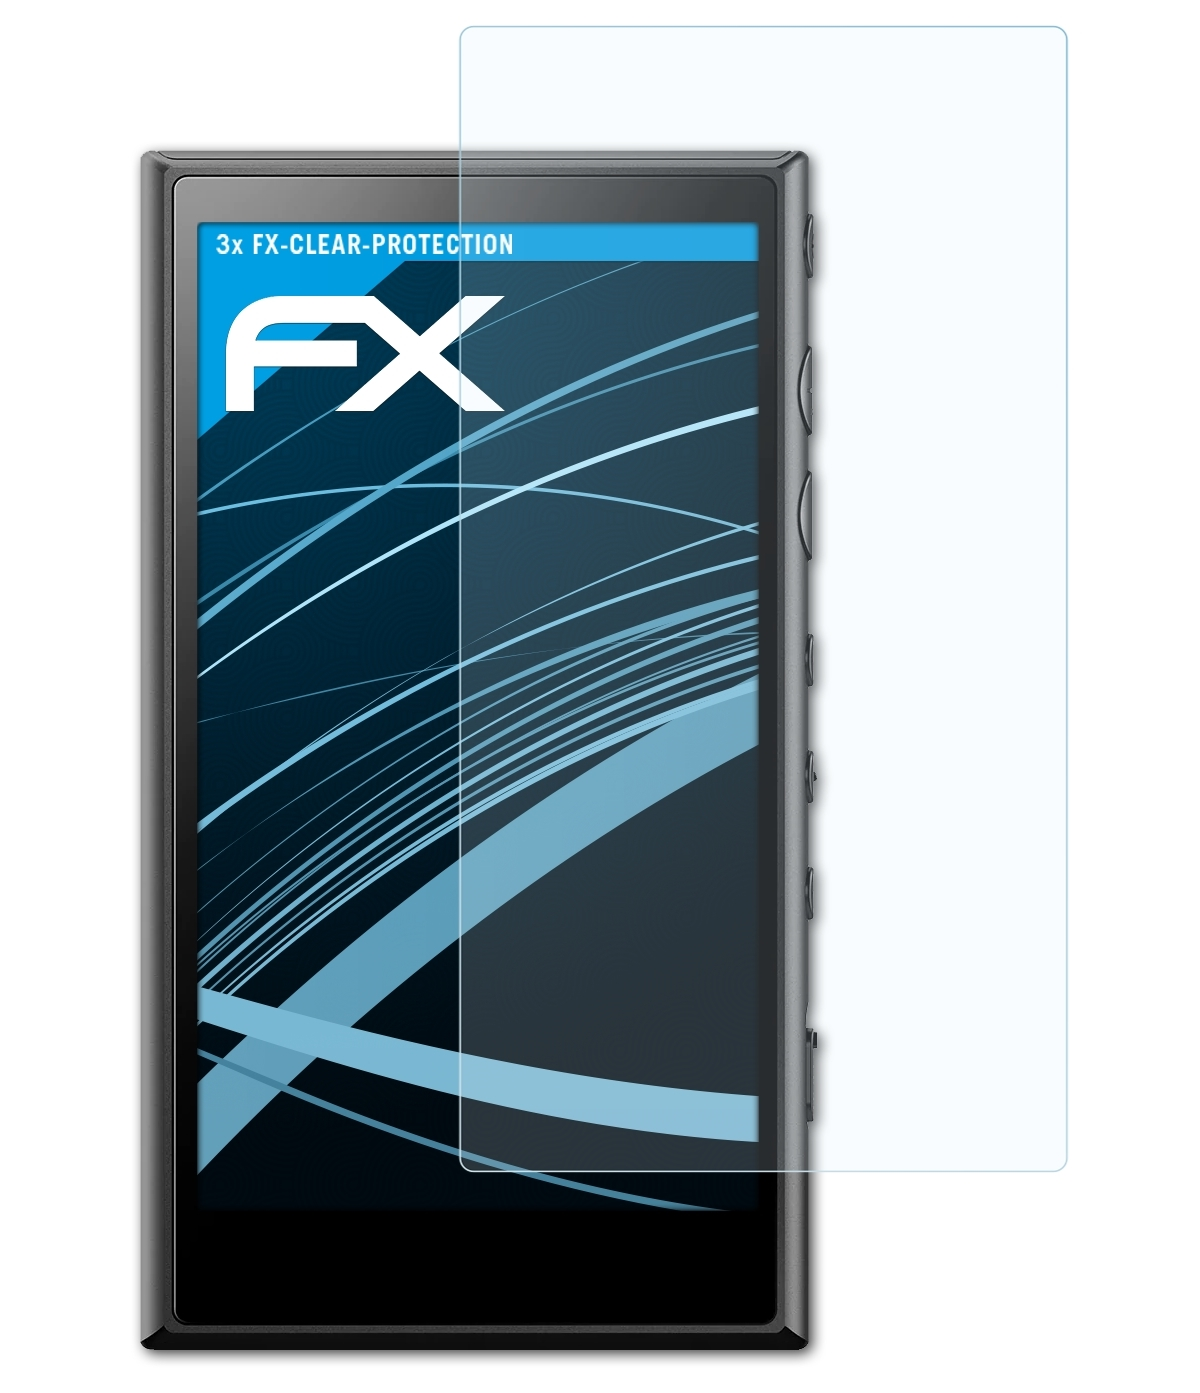 ATFOLIX 3x FX-Clear Displayschutz(für Walkman Sony NW-A100)